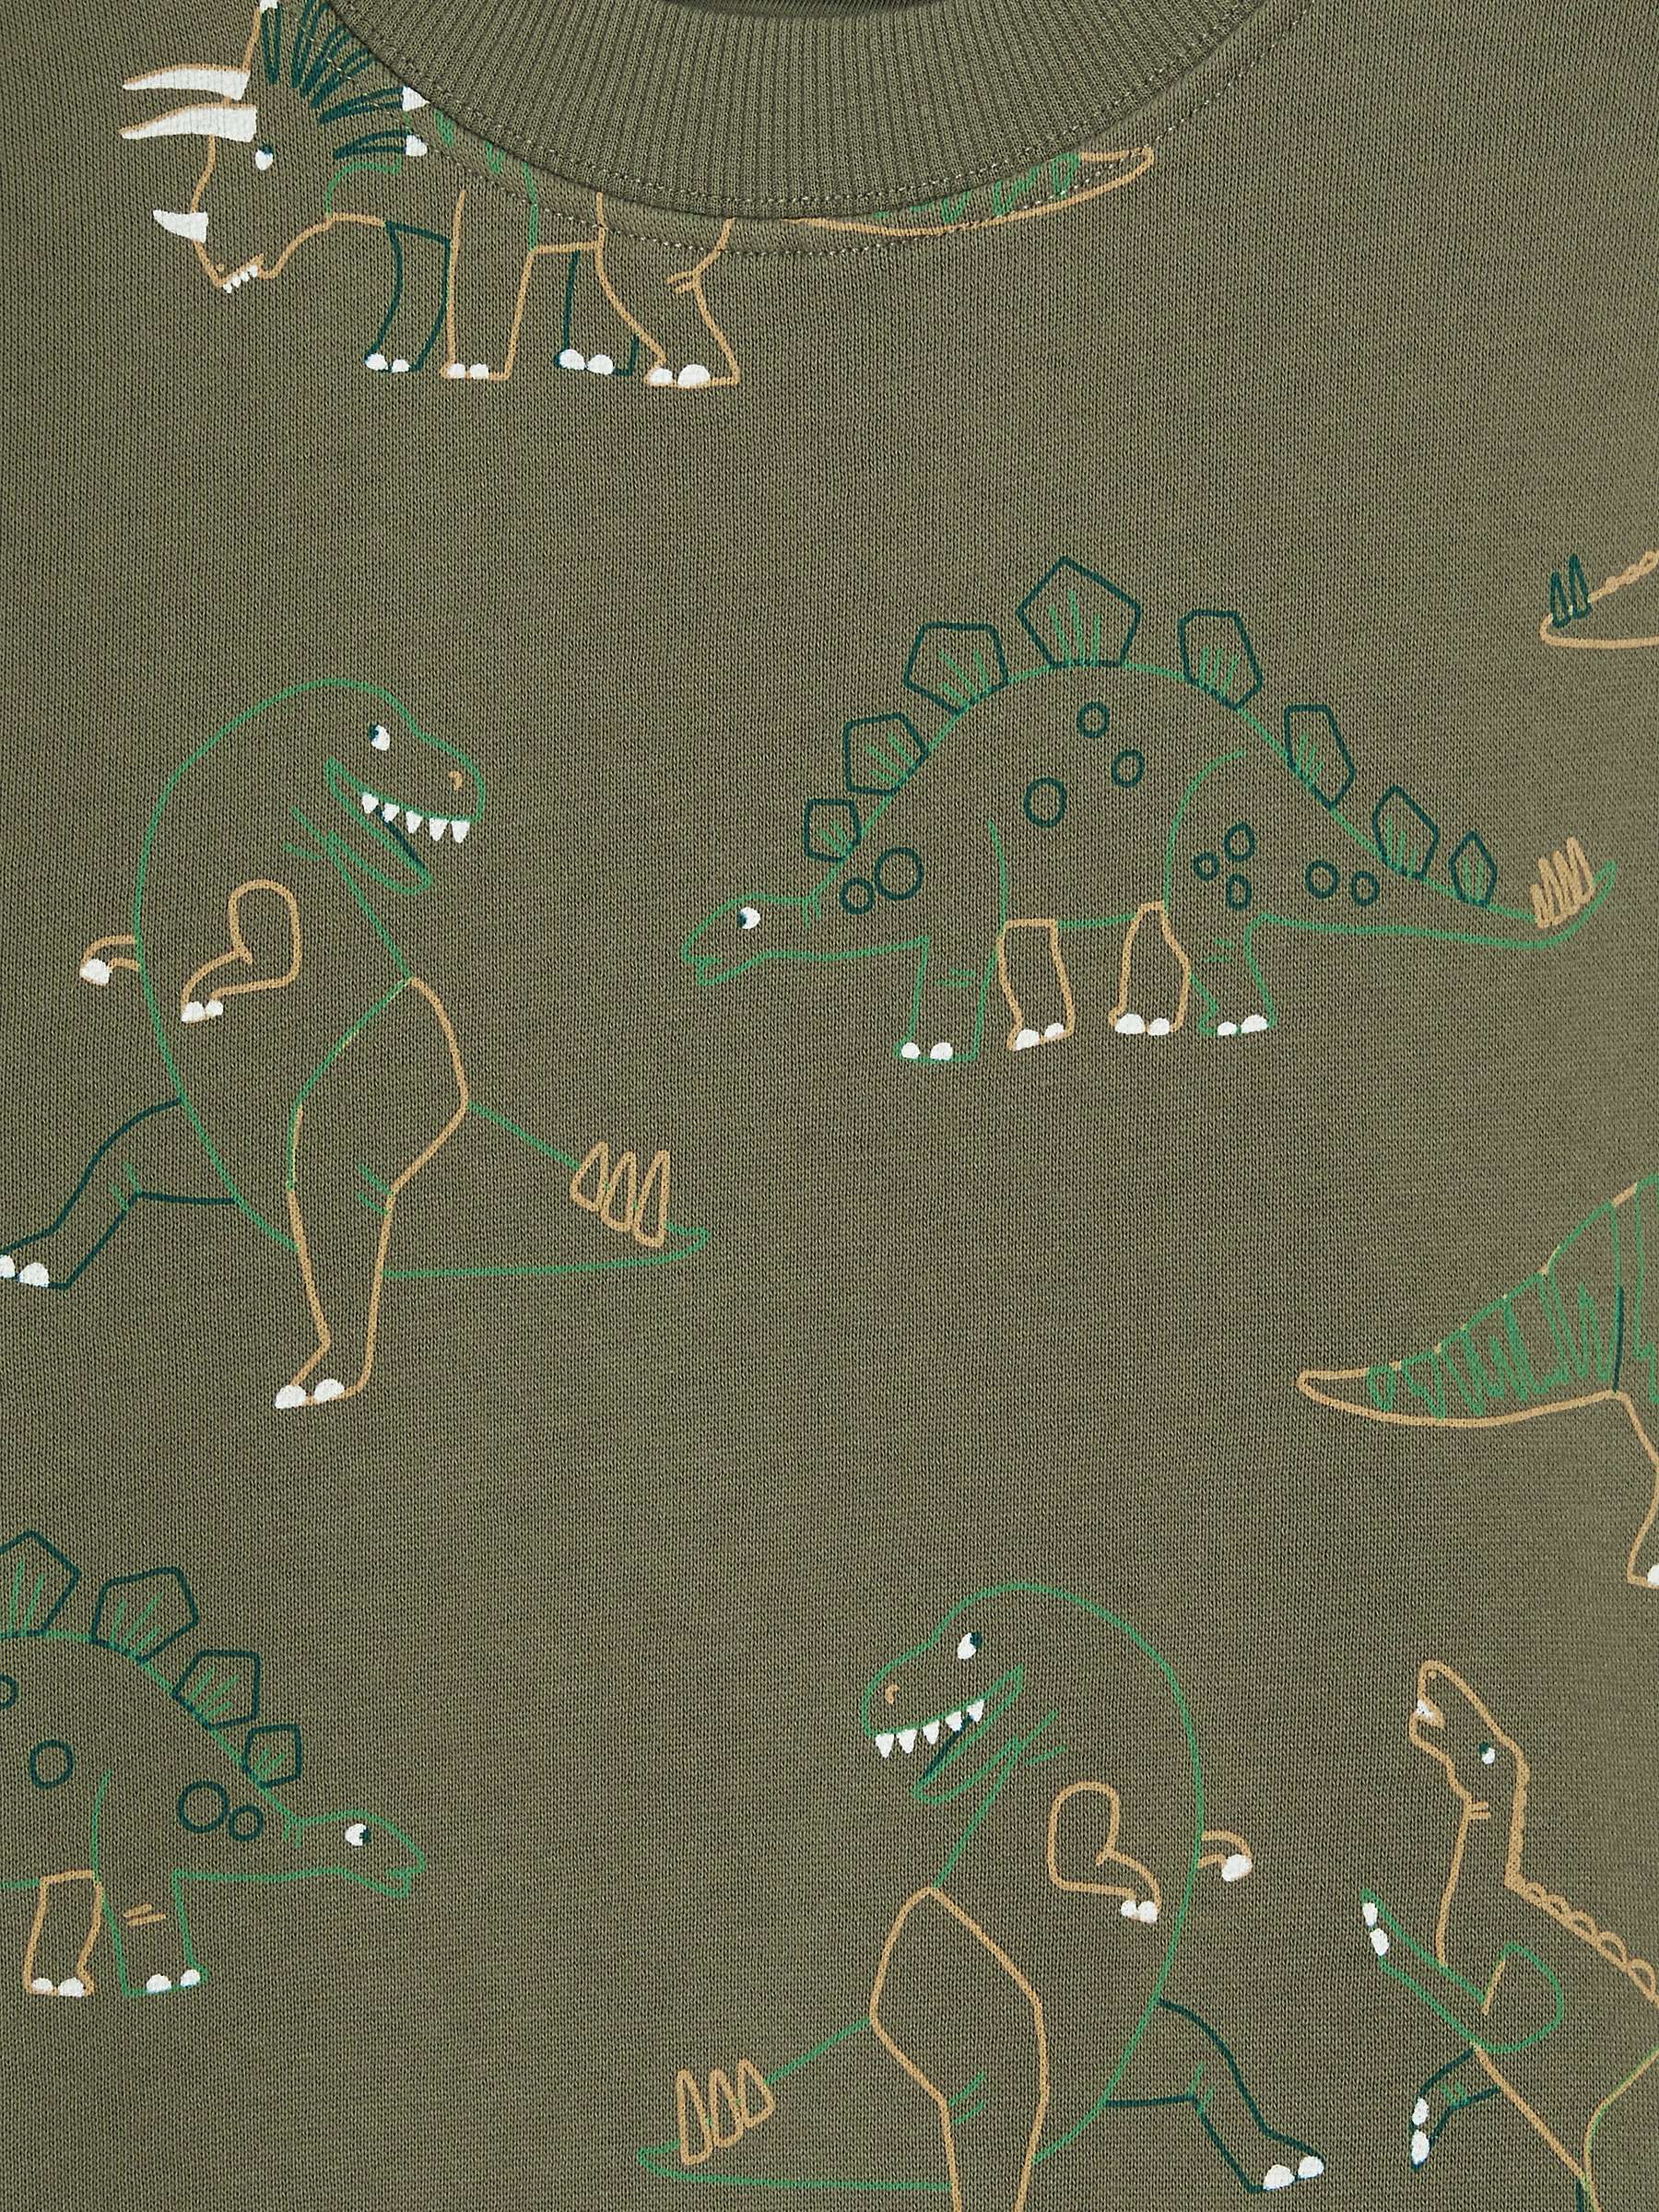 Buy John Lewis Kids' Dinosaur Brushback Cotton Sweatshirt, Khaki Online at johnlewis.com